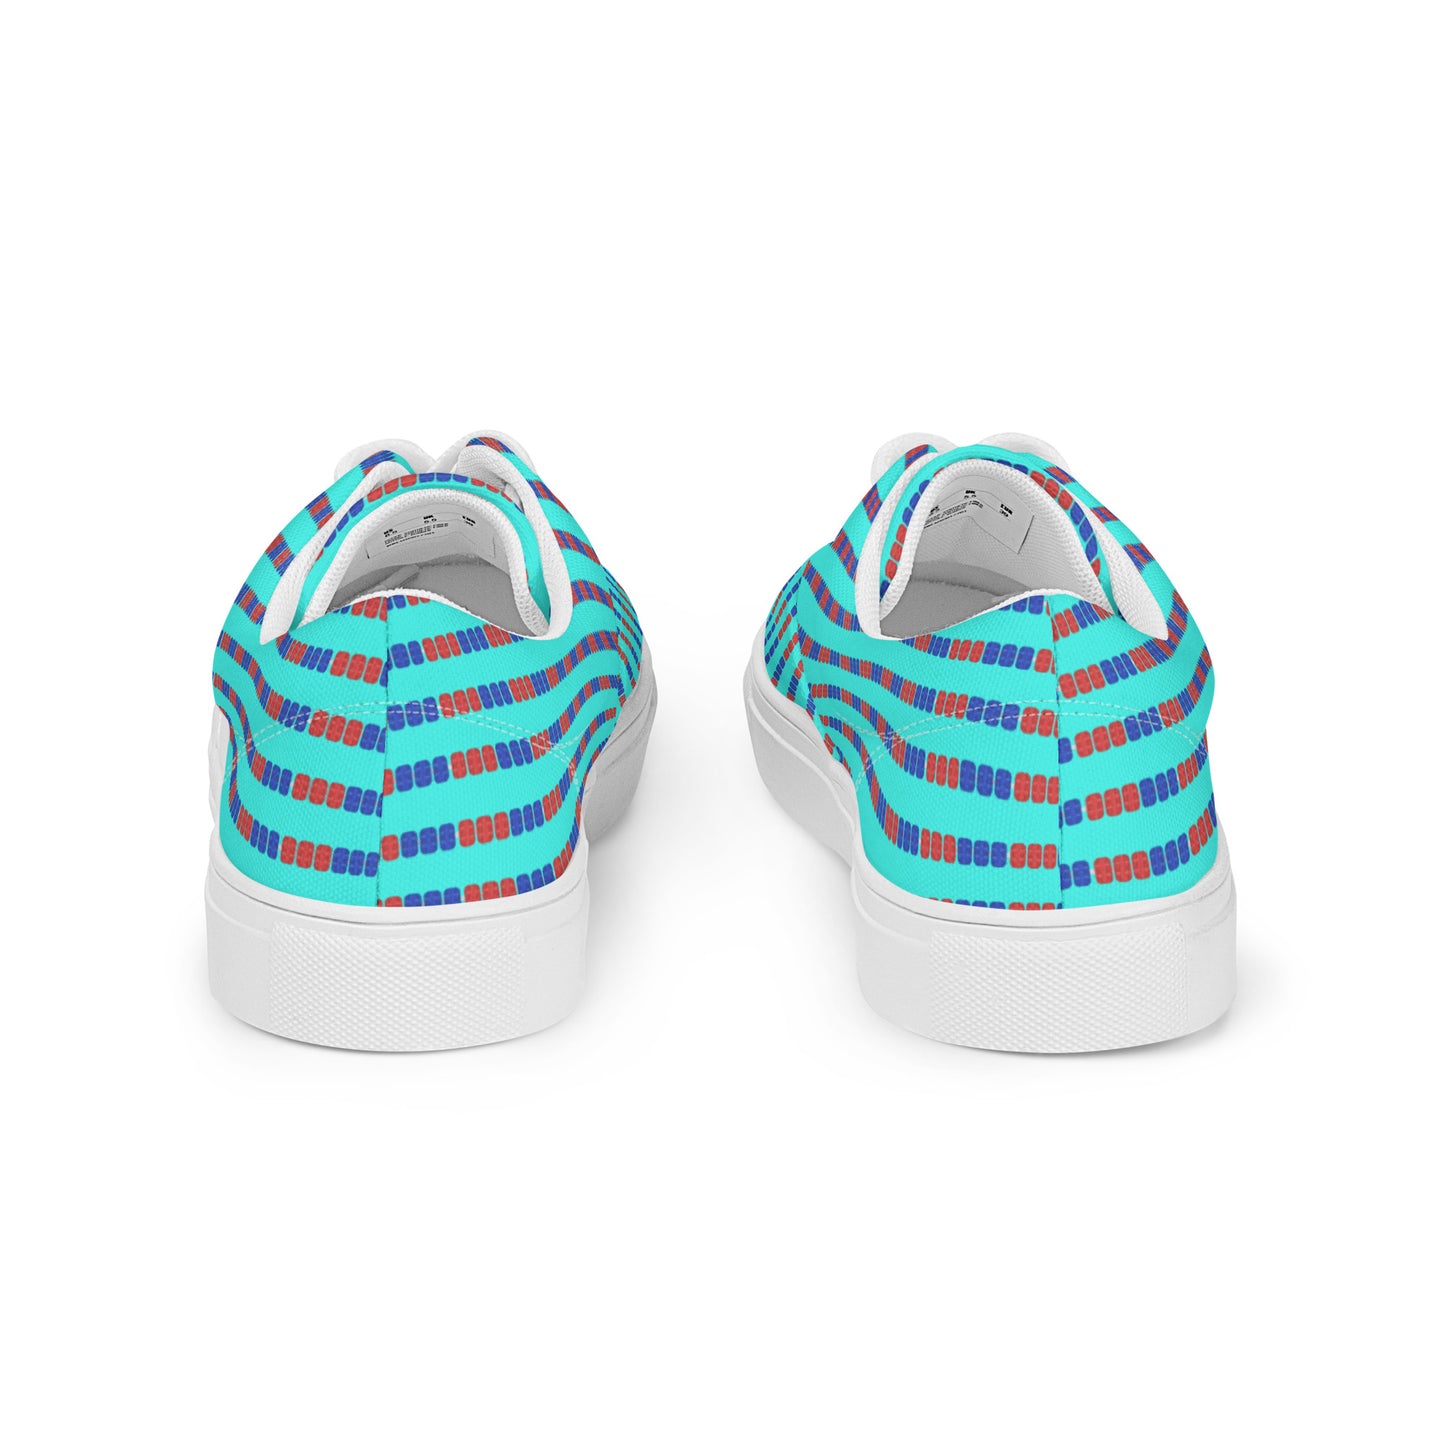 Swim Lane Stripes- Men’s lace-up canvas shoes